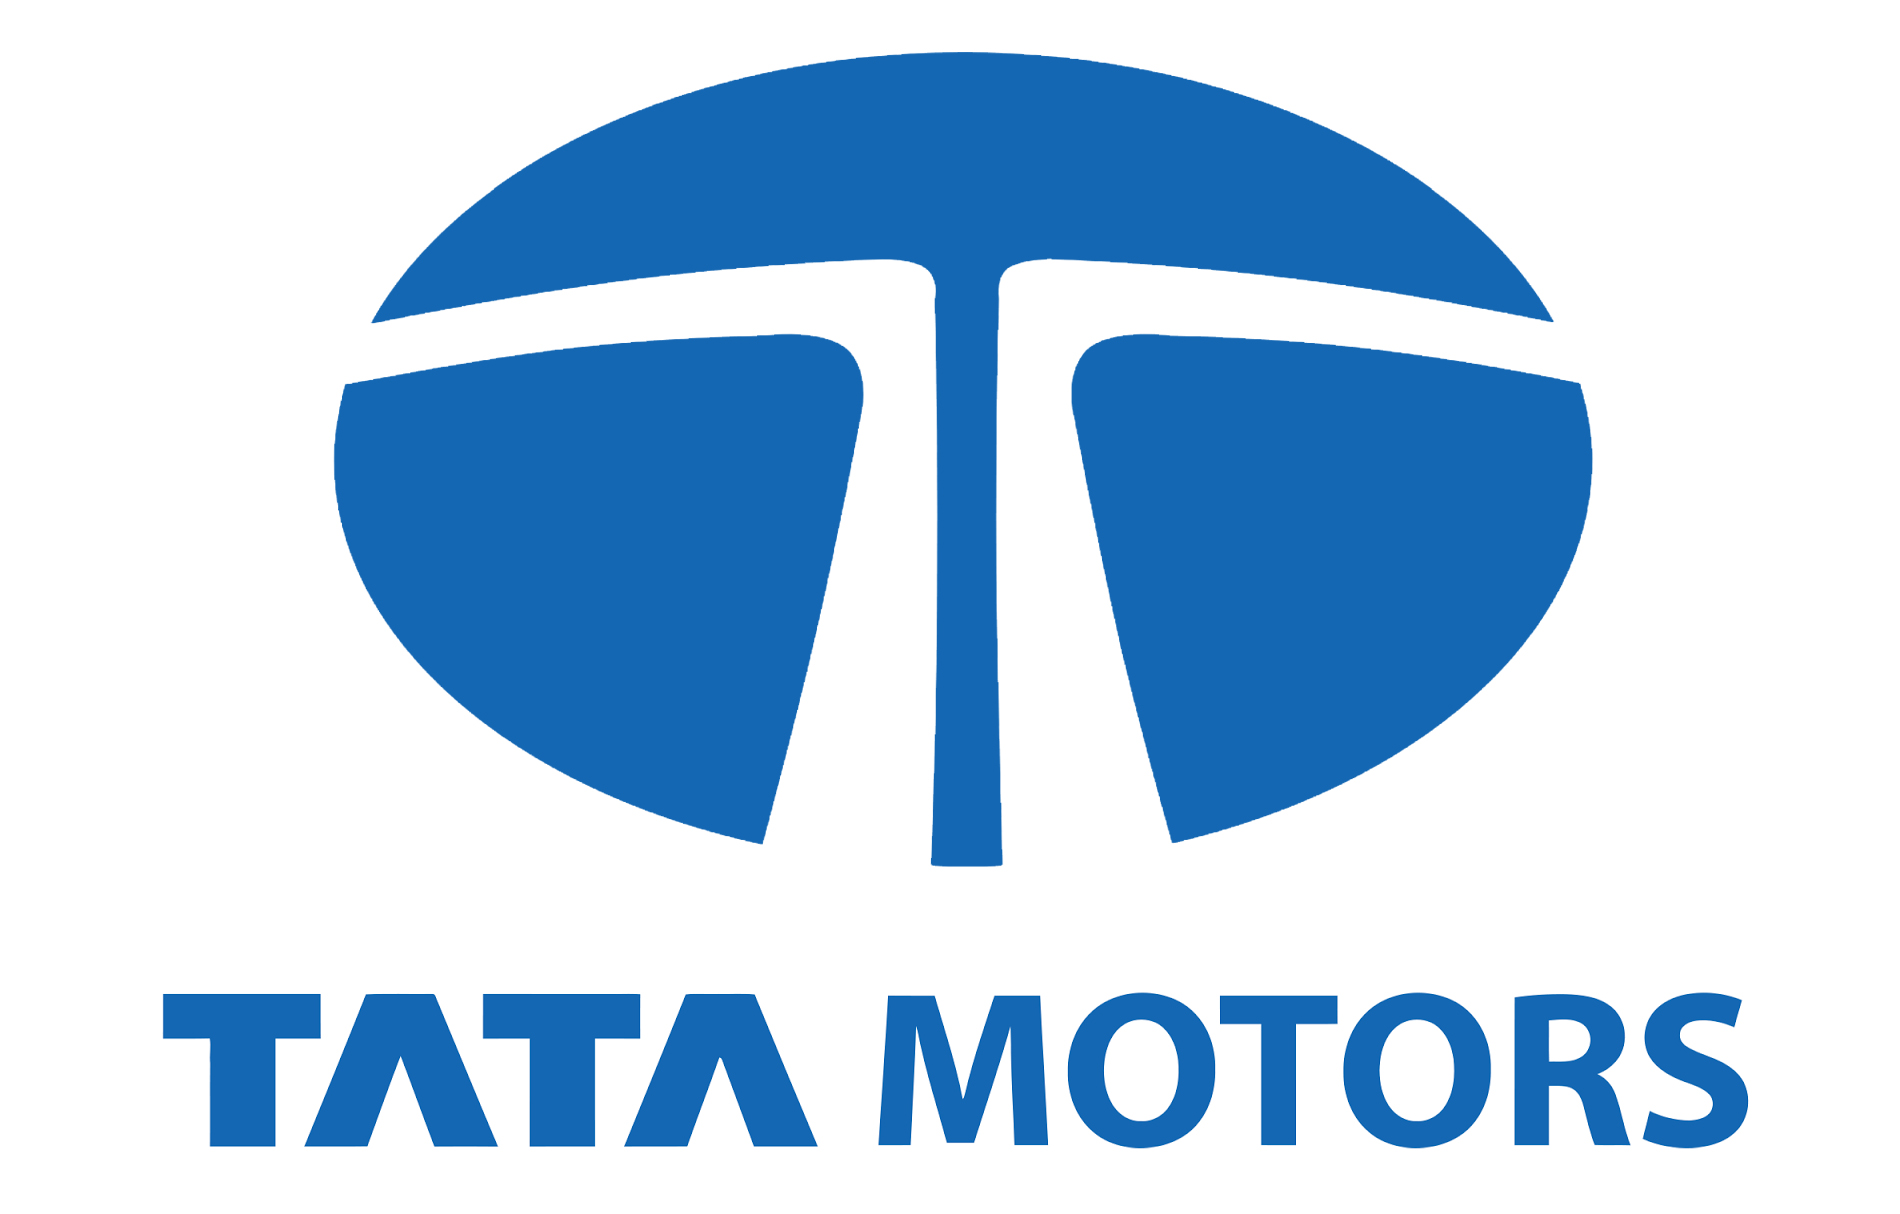 Tata Motors Cars Showroom - Banerjee Automobiles Pvt Ltd|Show Room|Automotive